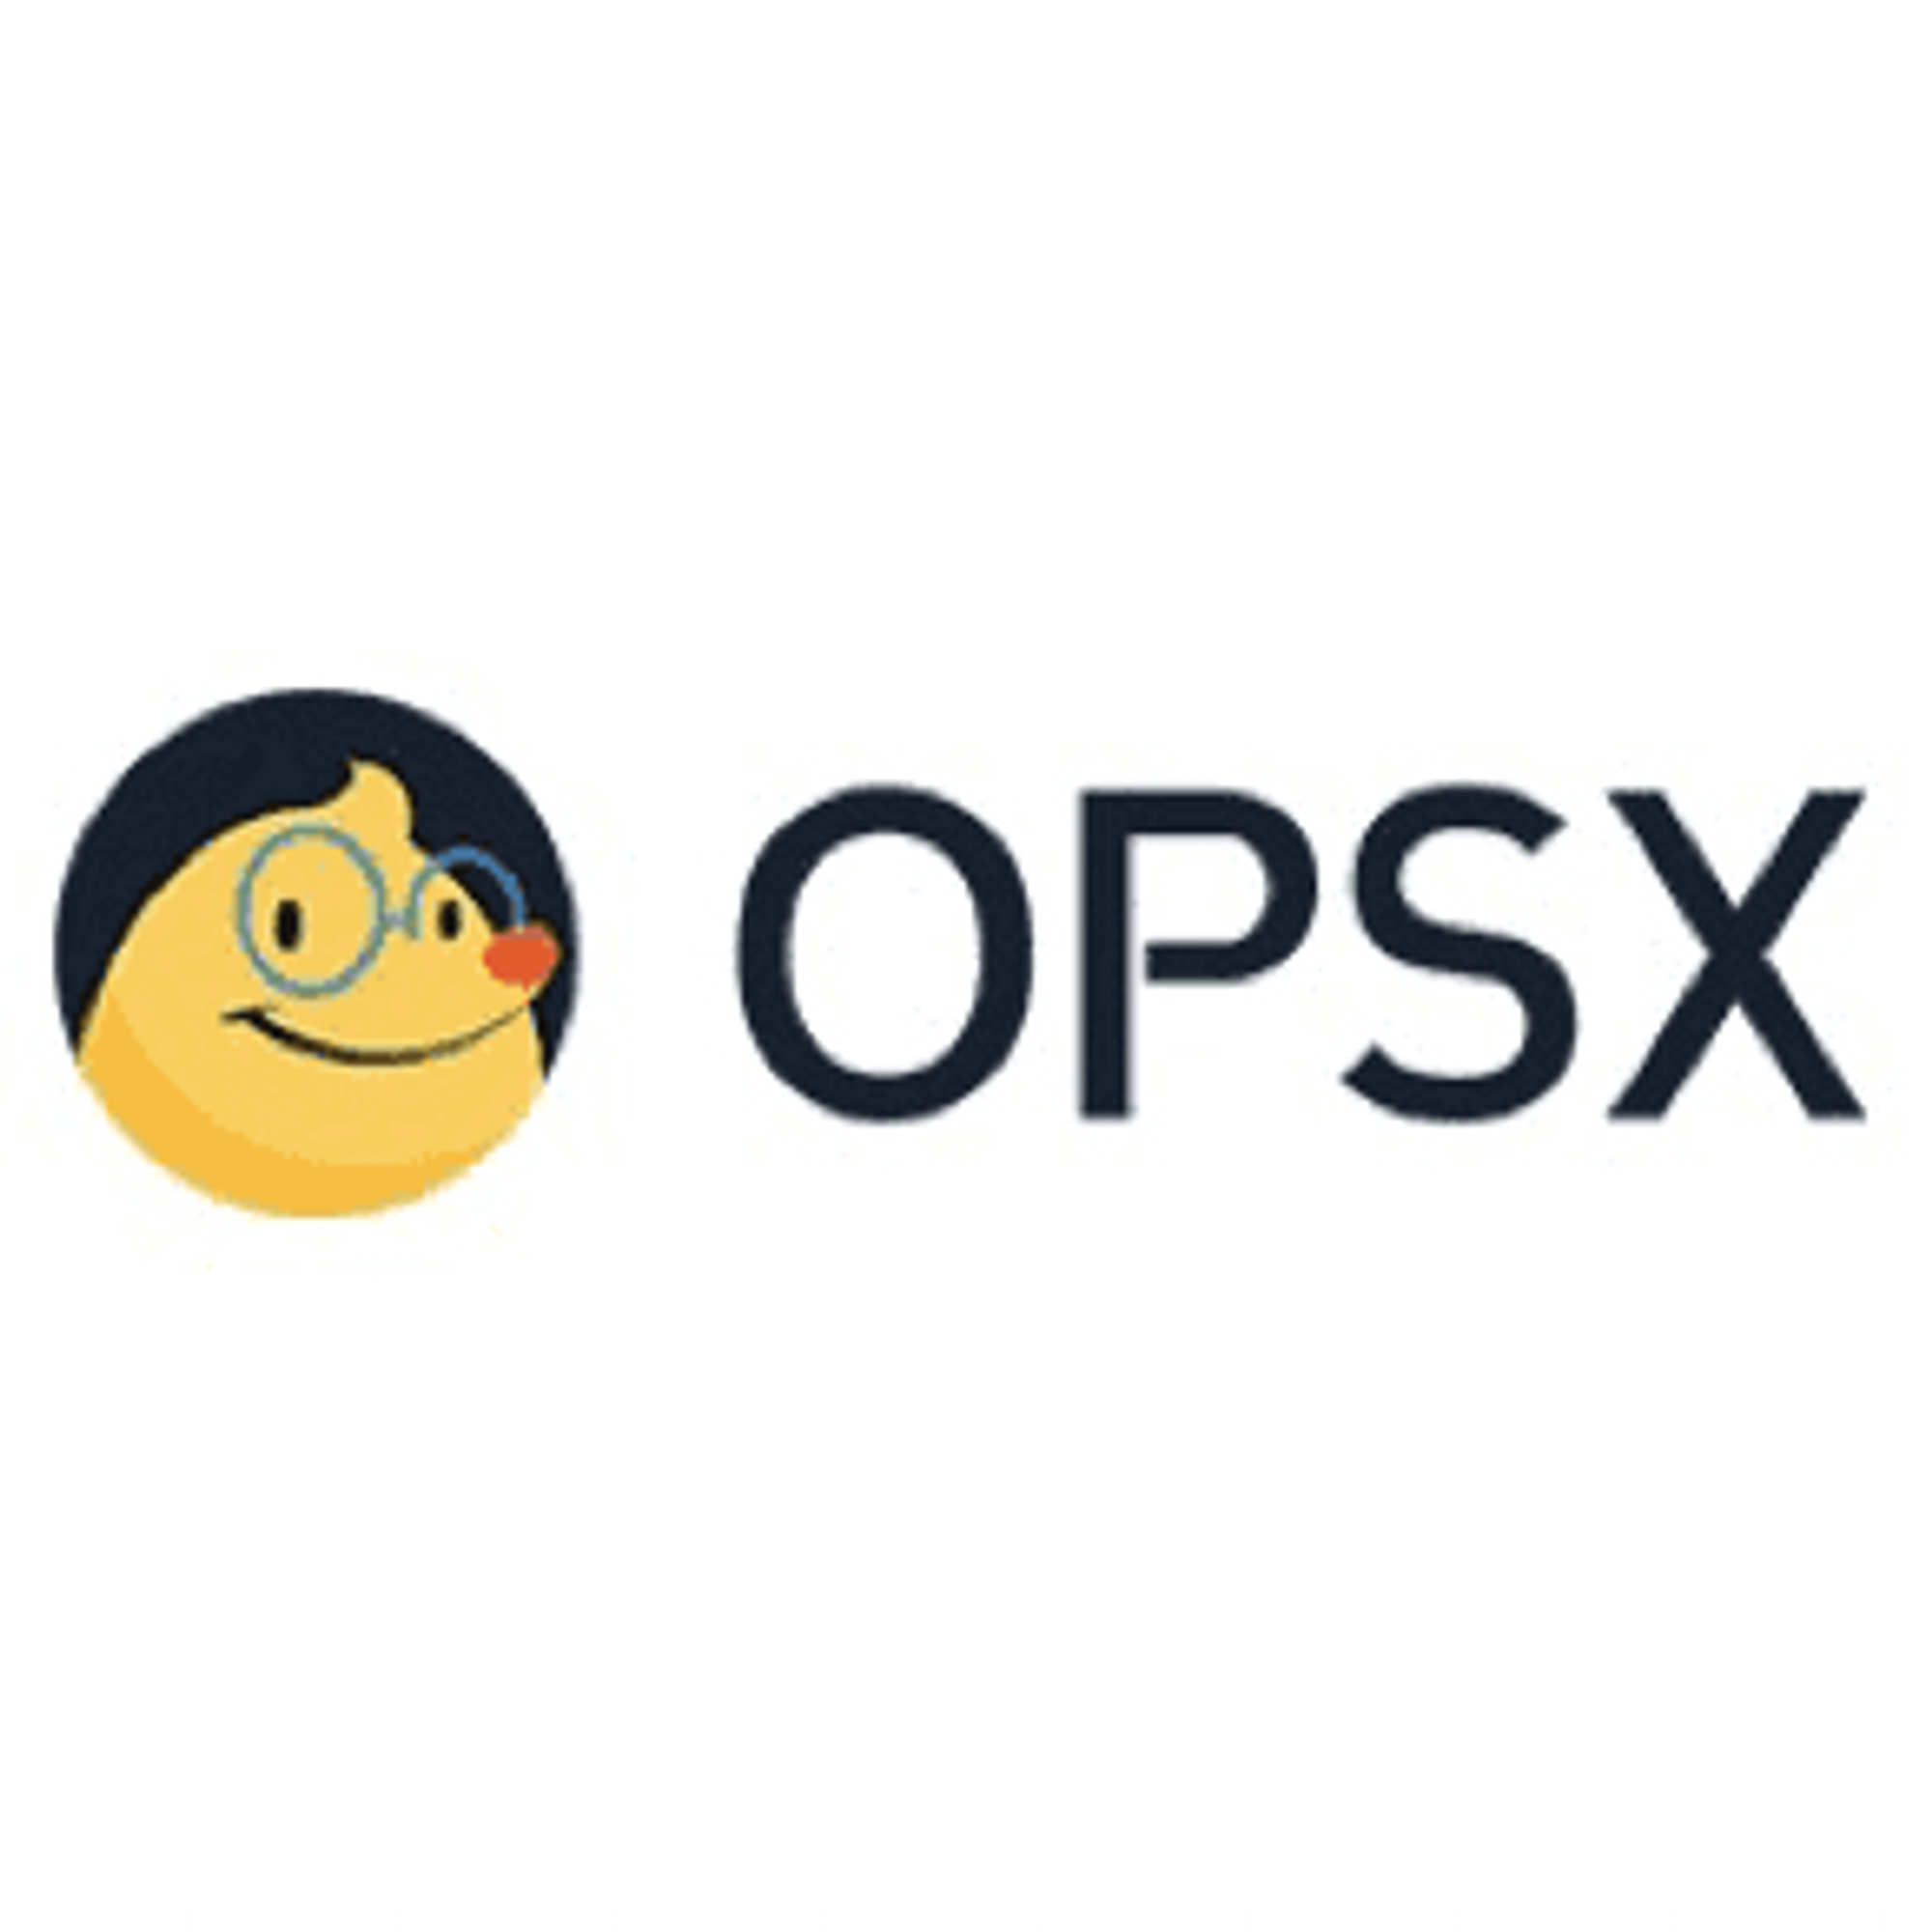 阿里巴巴开源镜像站-OPSX镜像站-阿里云开发者社区